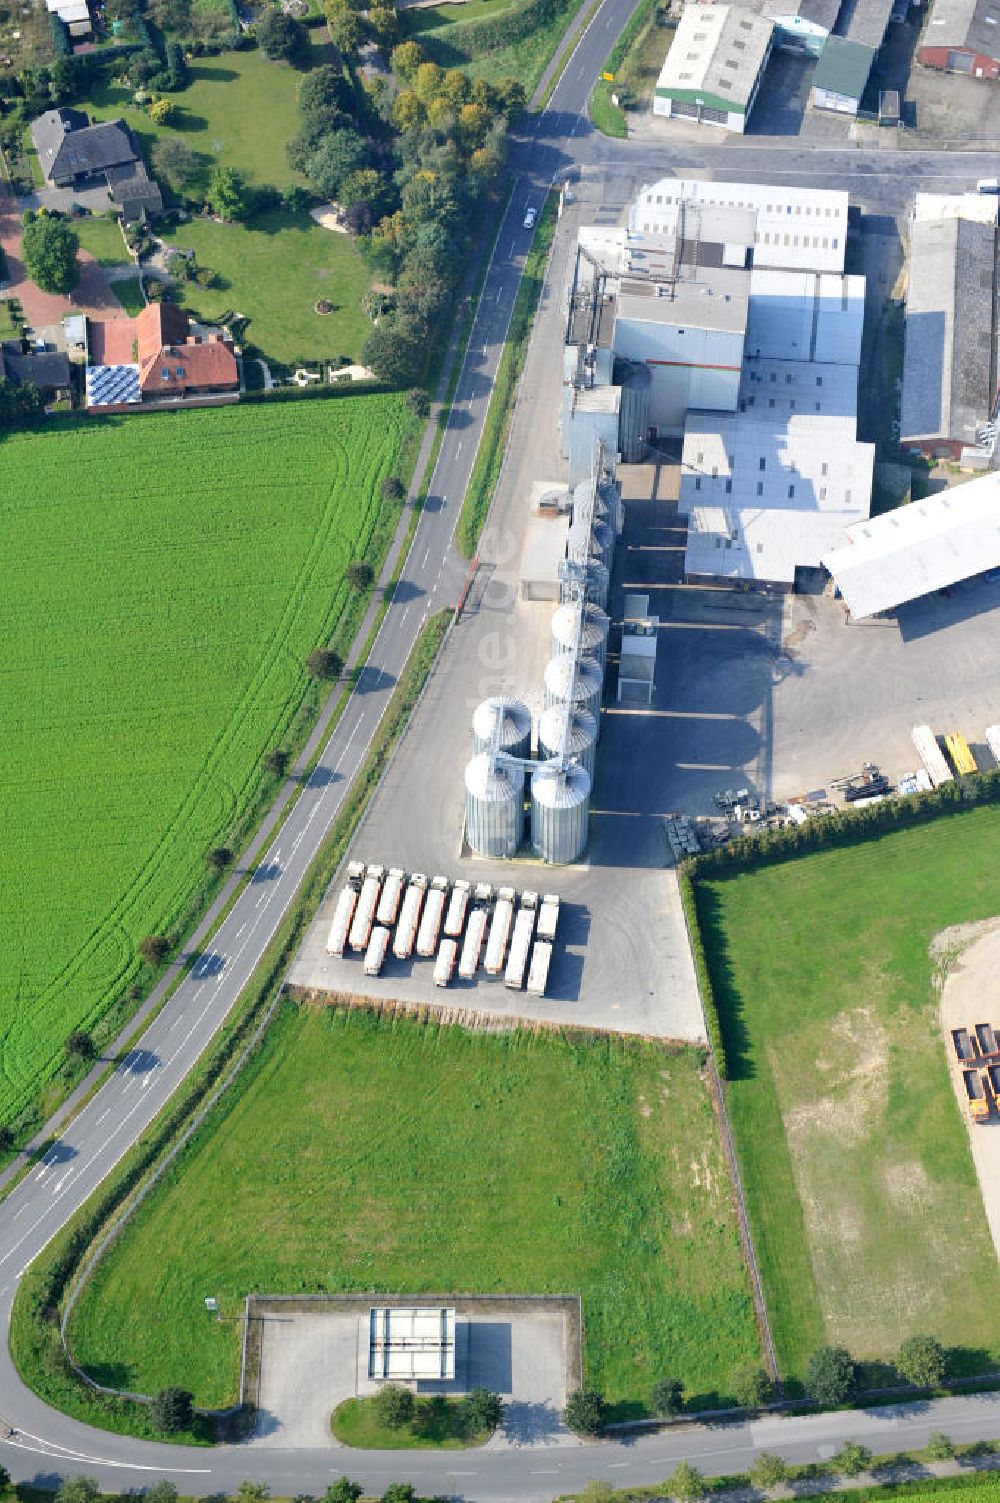 Luftbild Bawinkel - Firmengelände des Landhandels und Kraftfutterwerk der Tihen GmbH & Co KG in Bawinkel / Niedersachsen